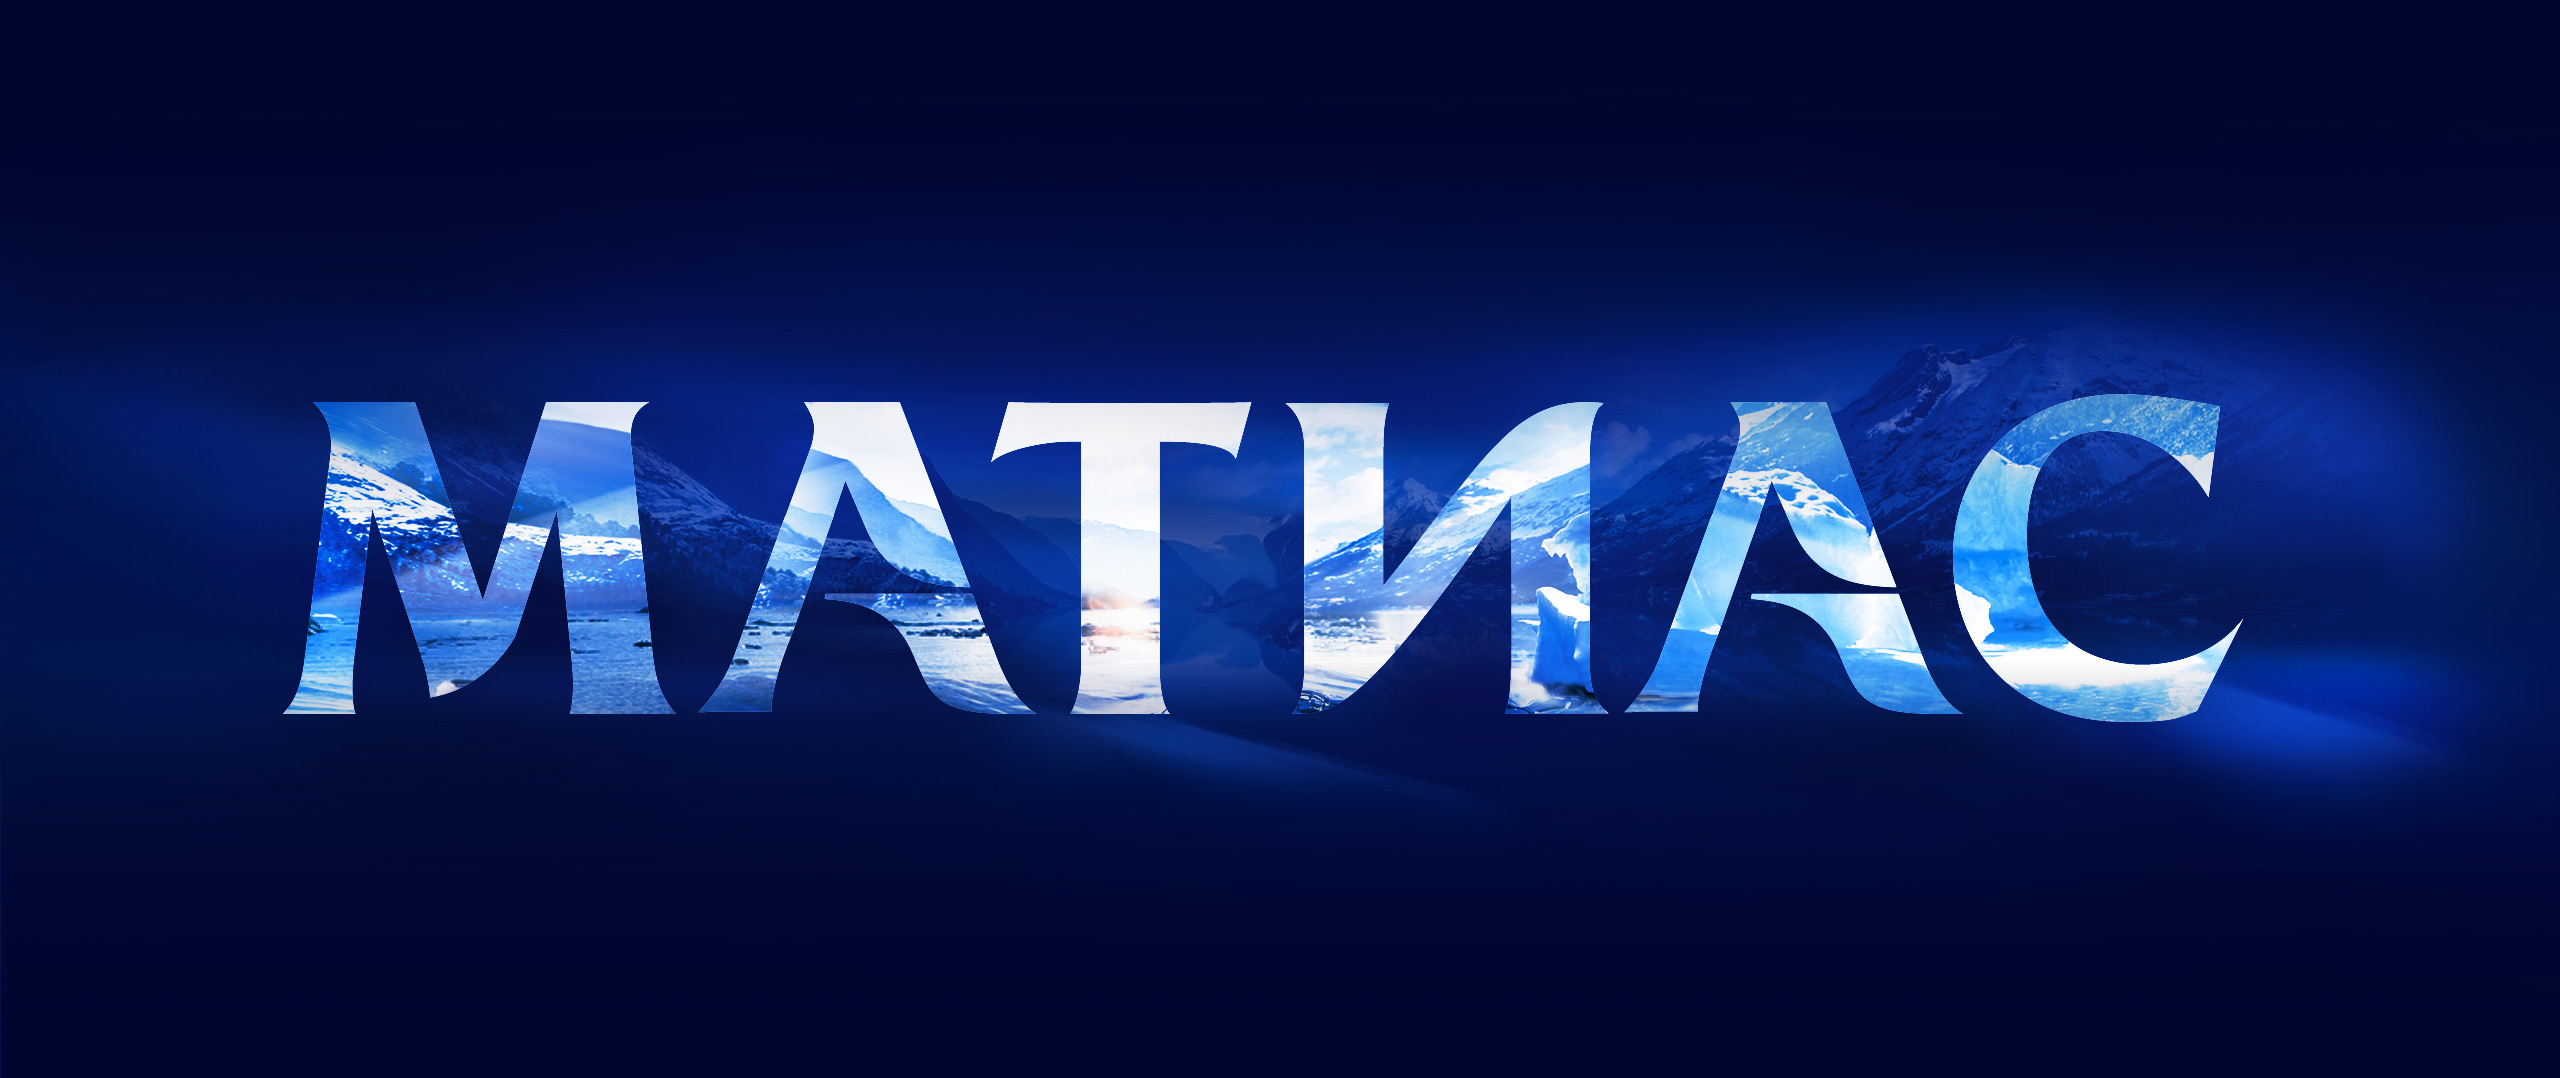 mattias-logo-banner.jpg